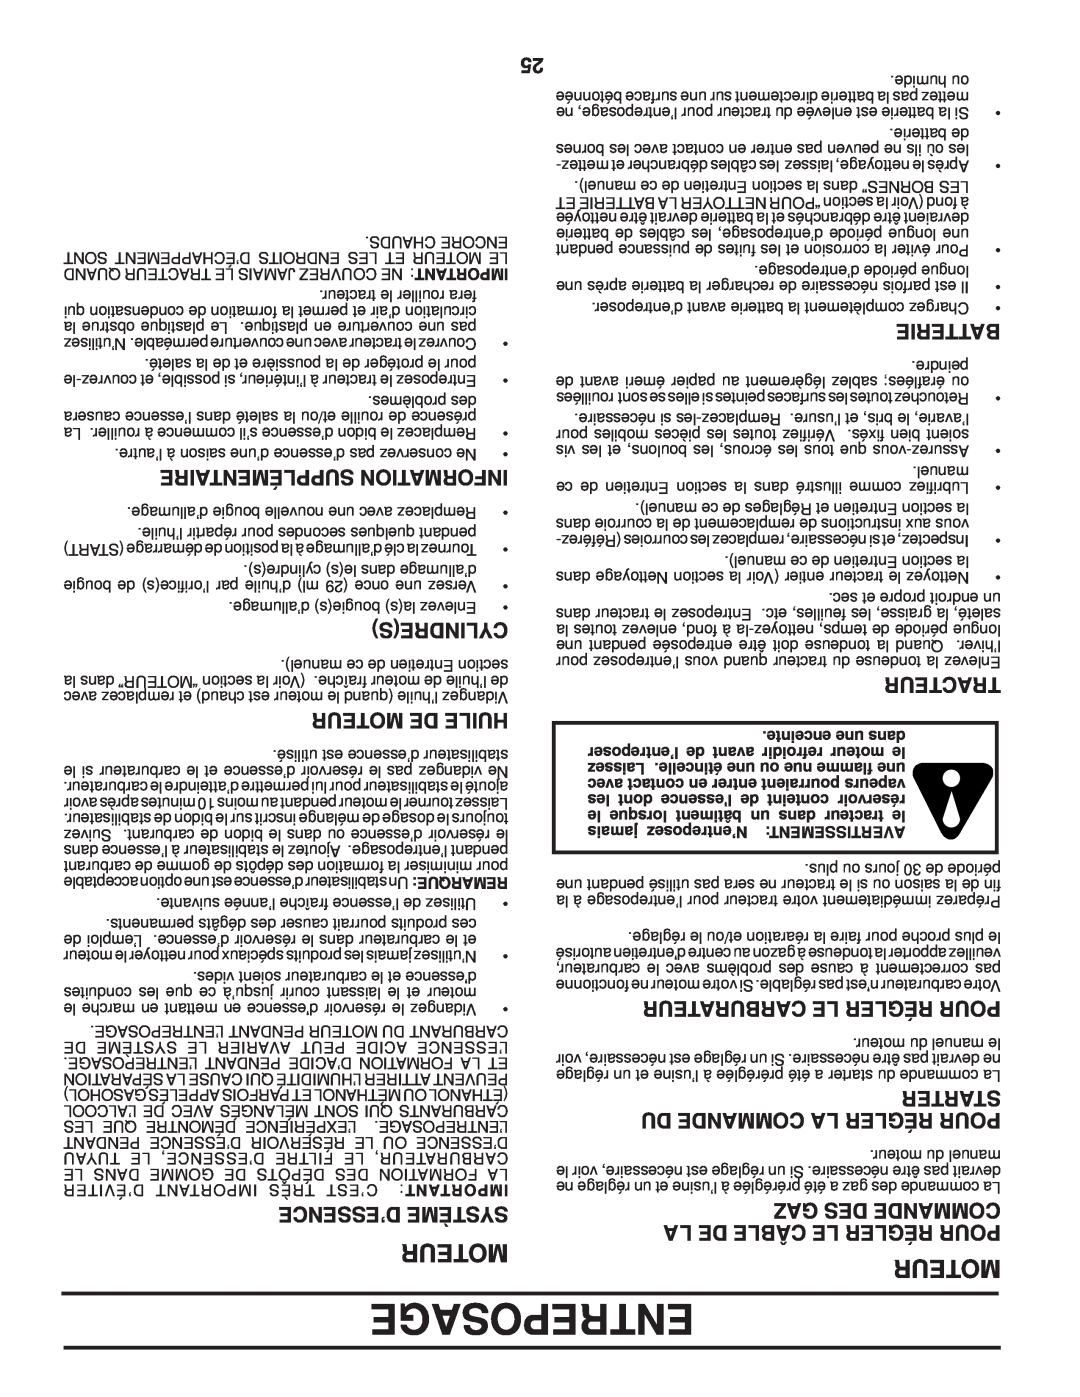 Poulan 411274 Entreposage, Moteur, Du Commande La Régler Pour, Gaz Des Commande, Supplémentaire Information, Cylindres 